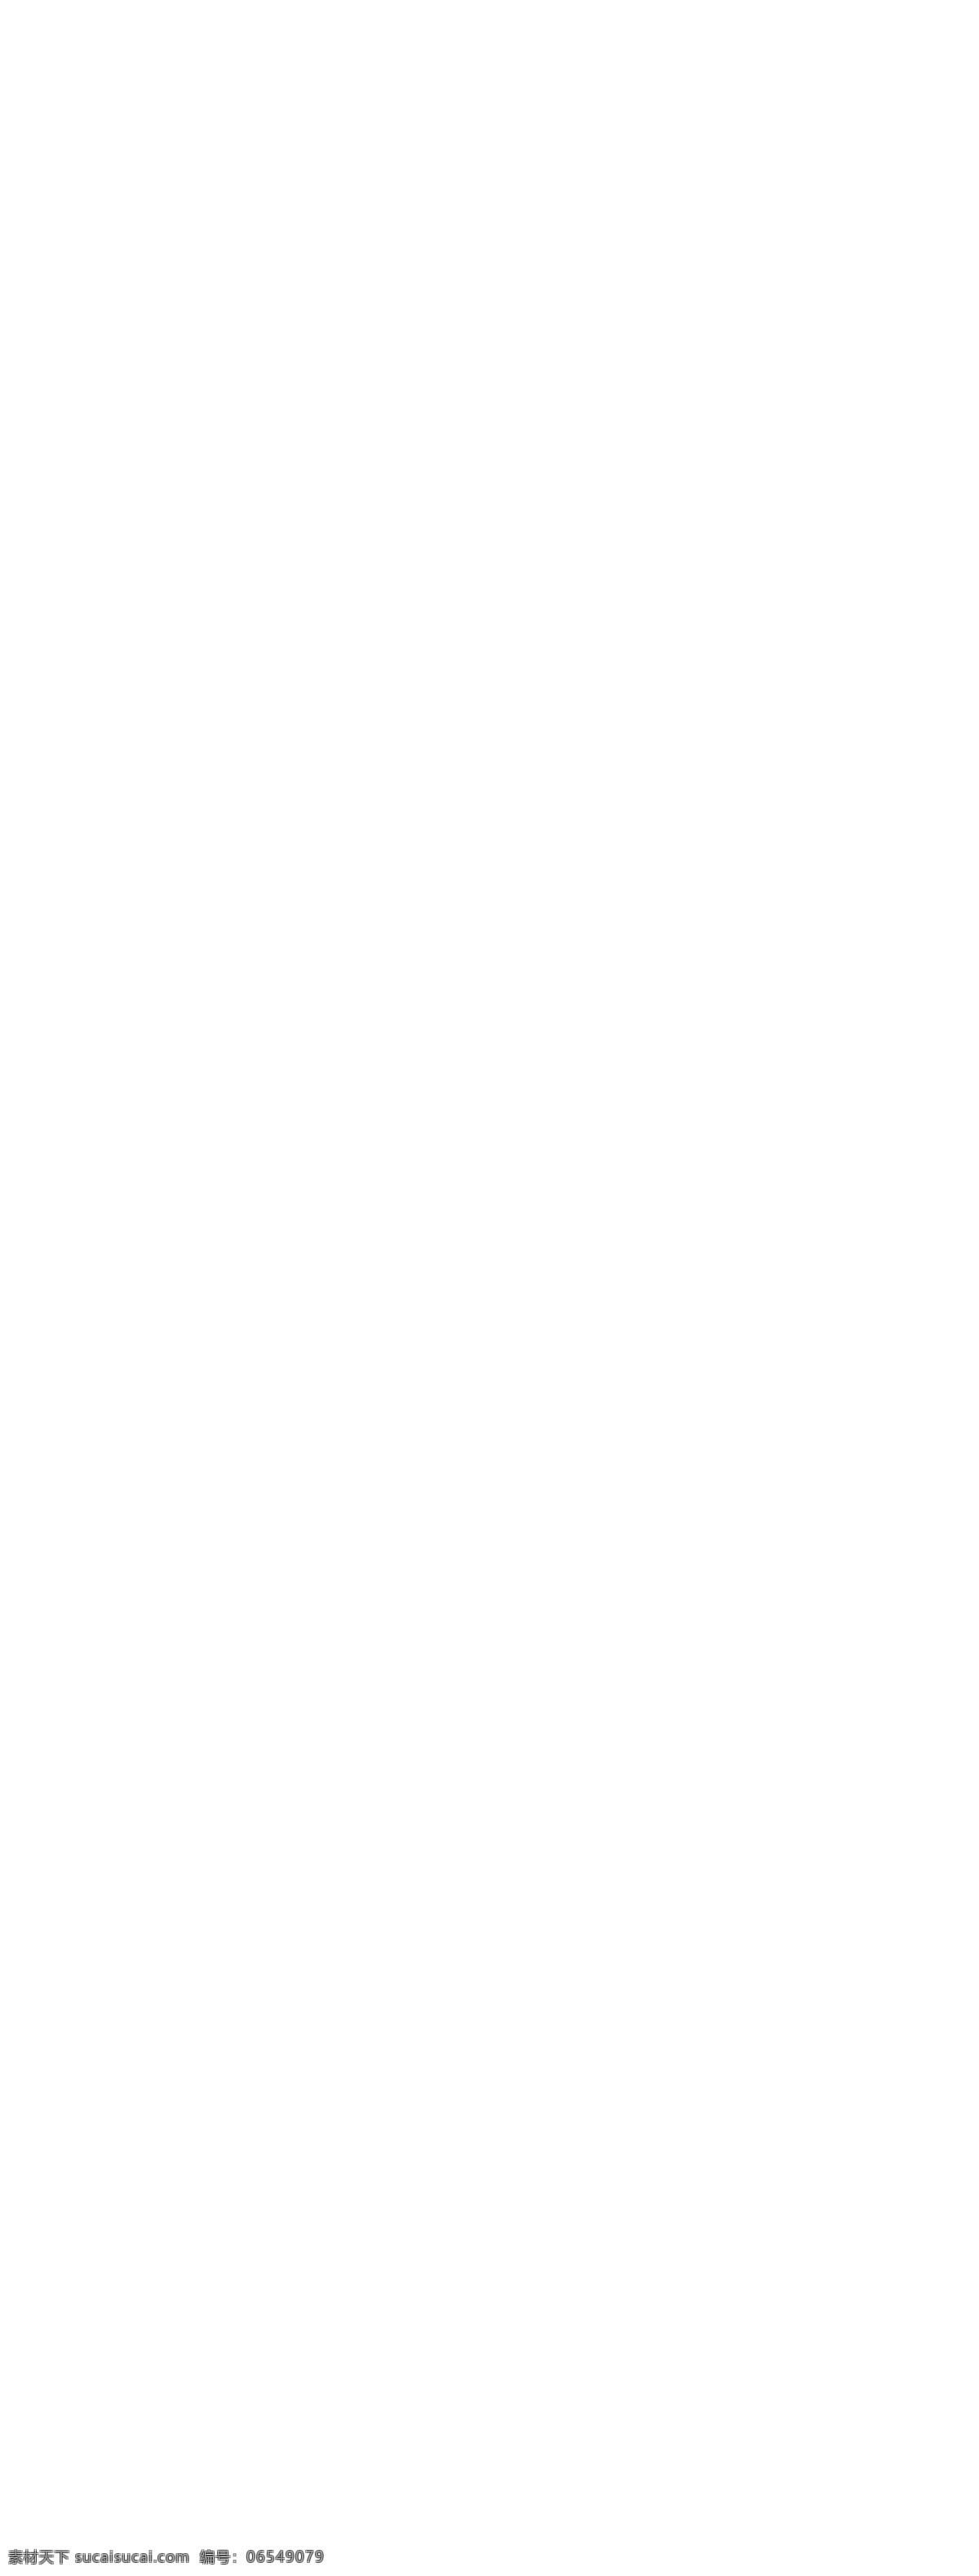 2018 天猫 嬉水 节 促销 淘宝 电商 首页 模板 优惠券 花卉 天猫嬉水节 电商首页模板 大促 通用模板 促销首页 几何形体 孟菲斯 春季上新 春夏新品 满减促销 电器 冰棒 草莓 百合花 帆船 海洋 夹脚拖 海星 救生圈 墨镜